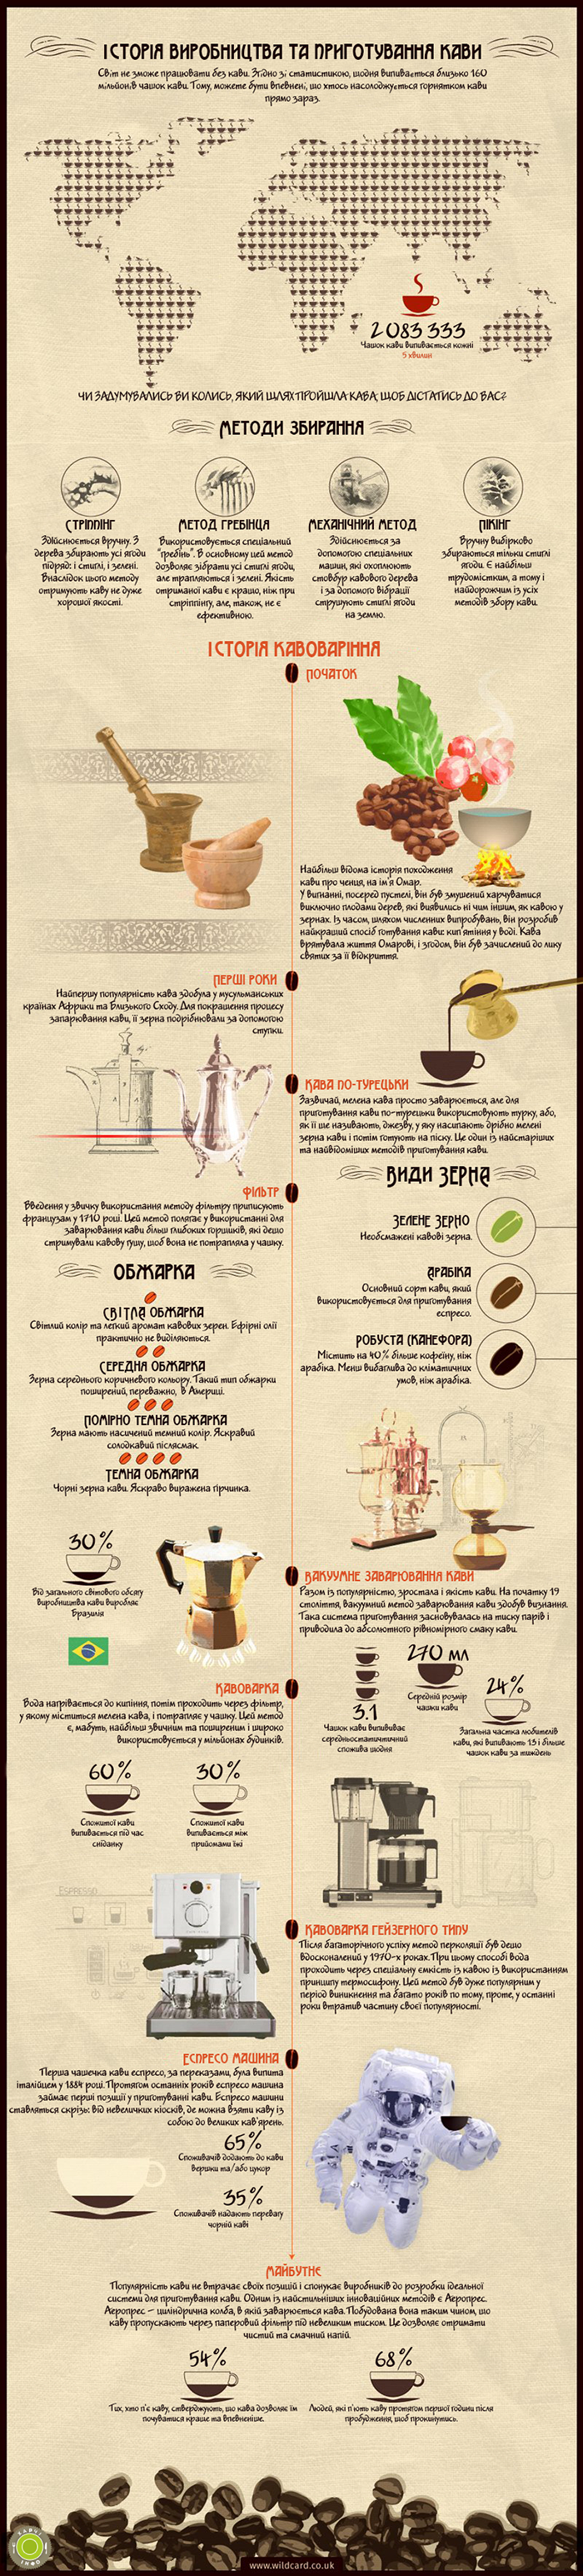 Історія виробництва та приготування кави